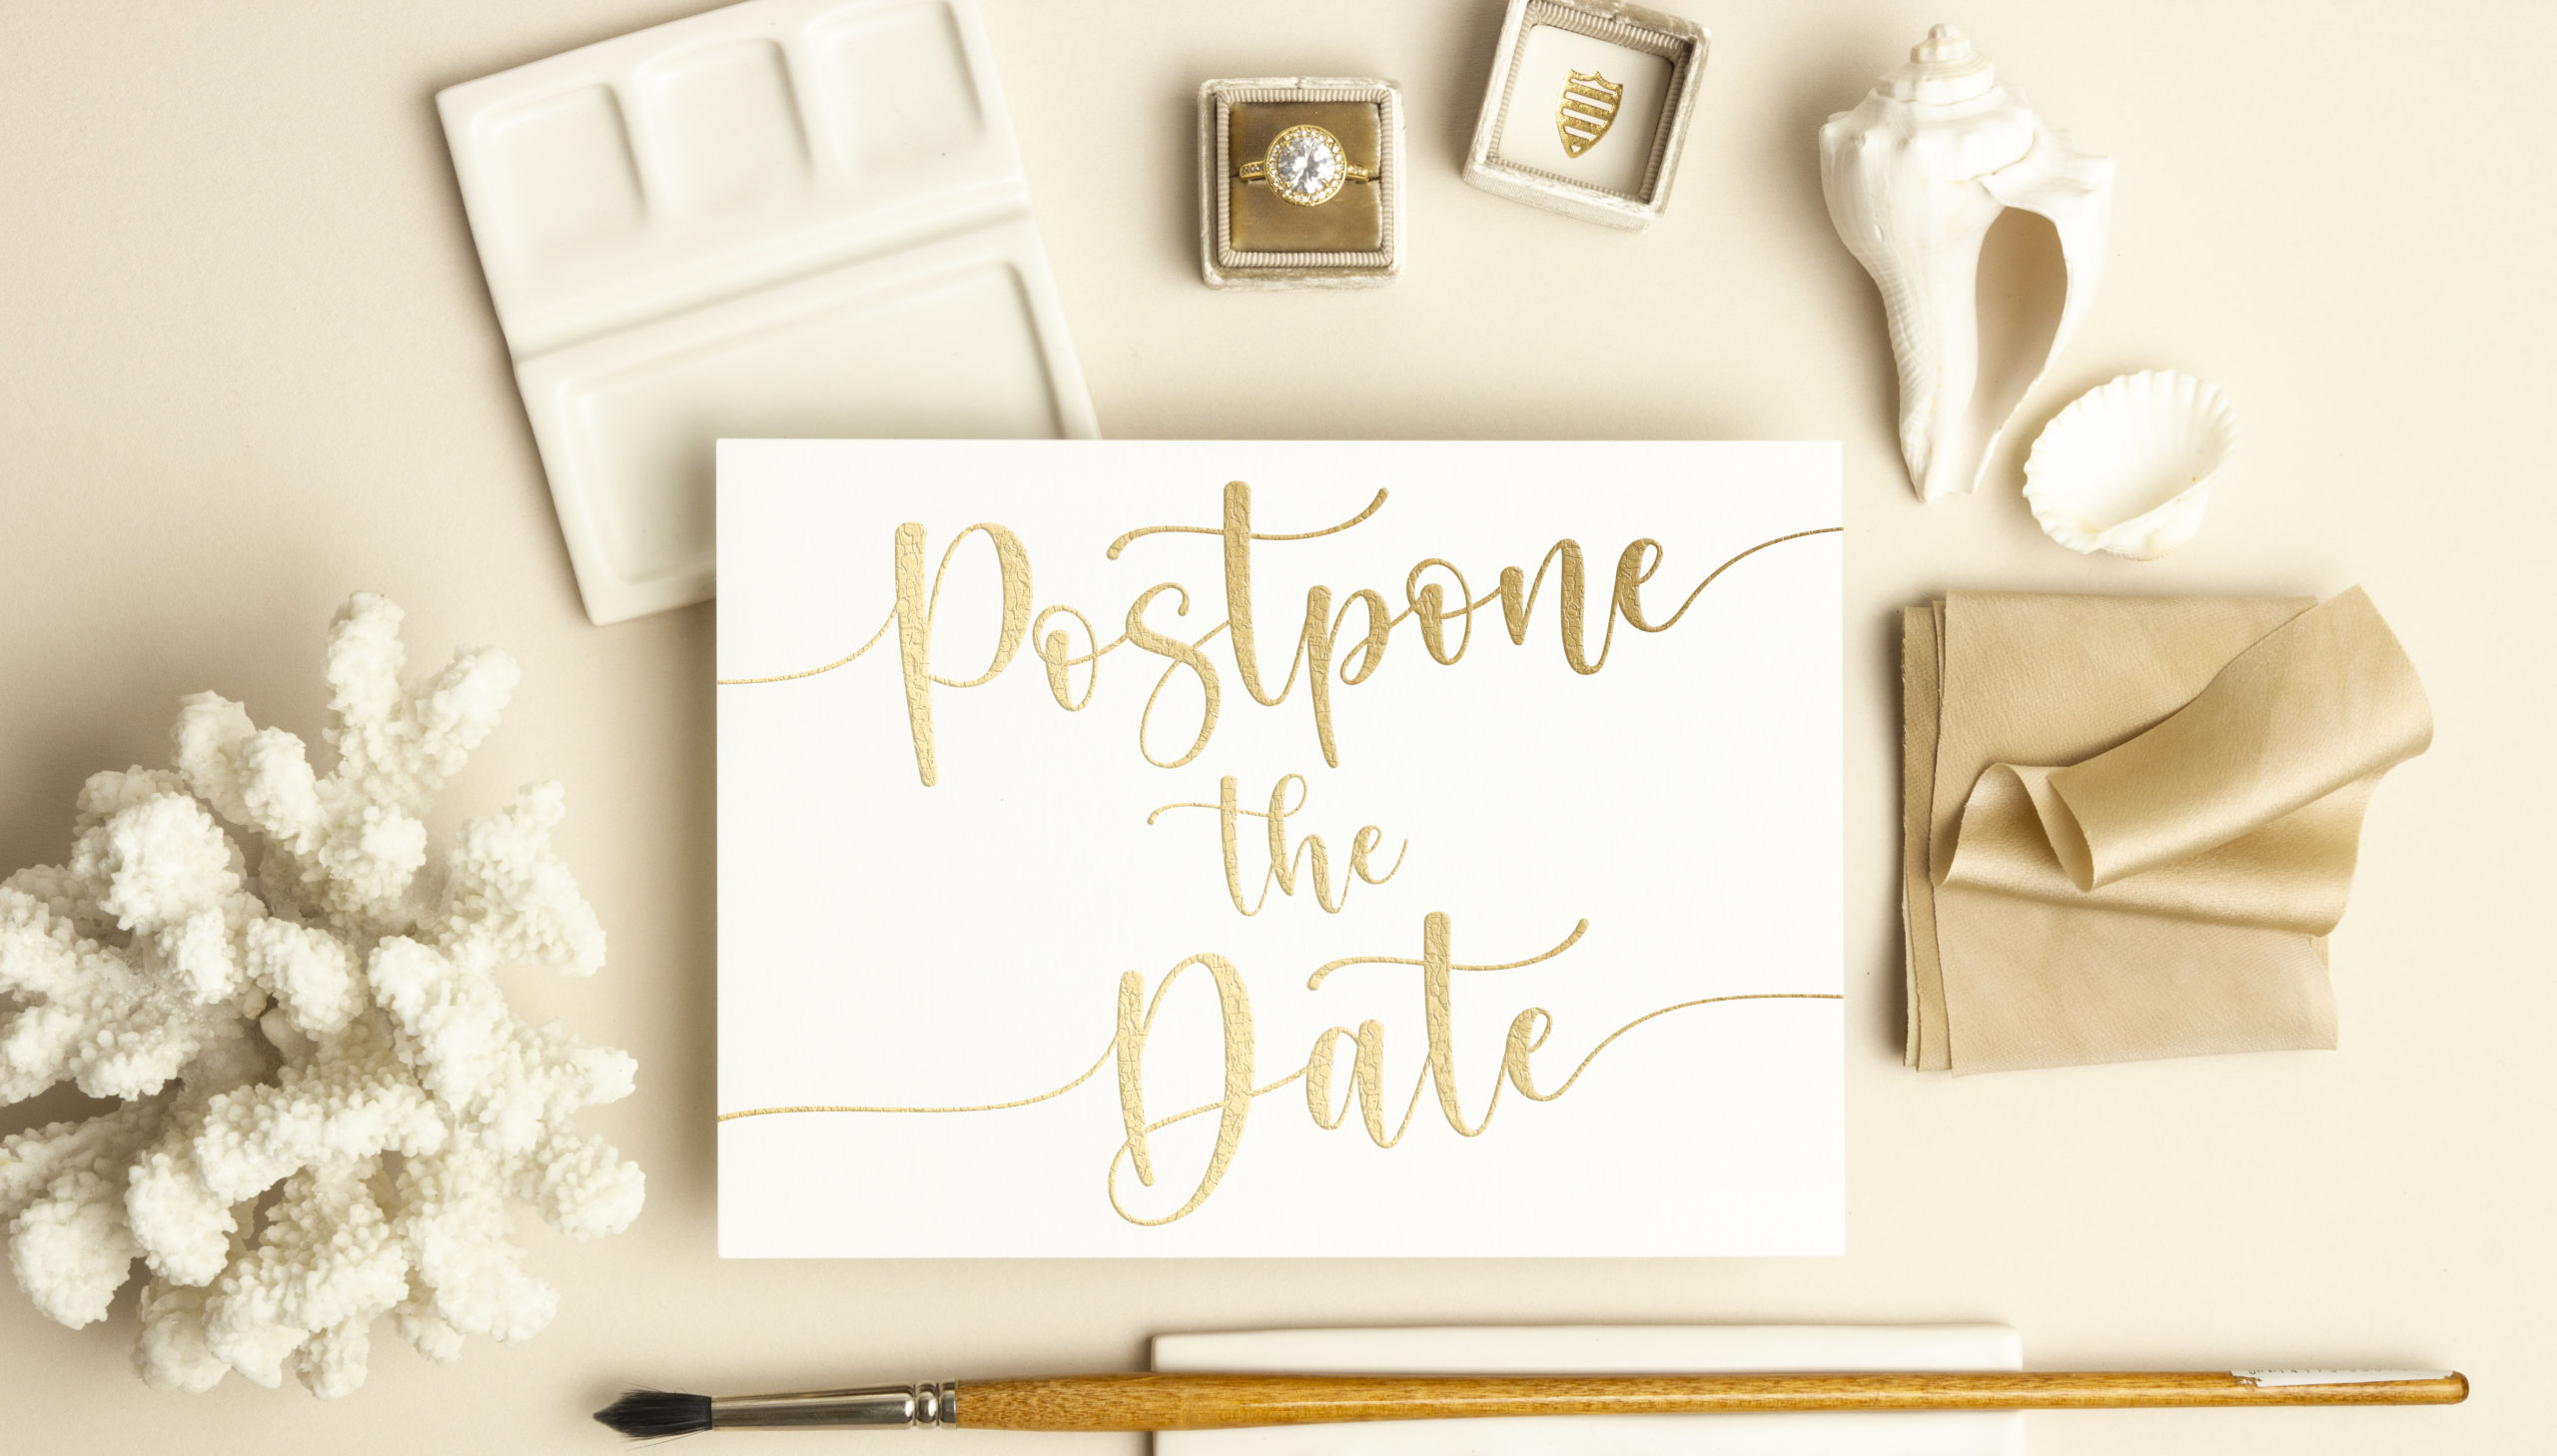 Postpone the Date